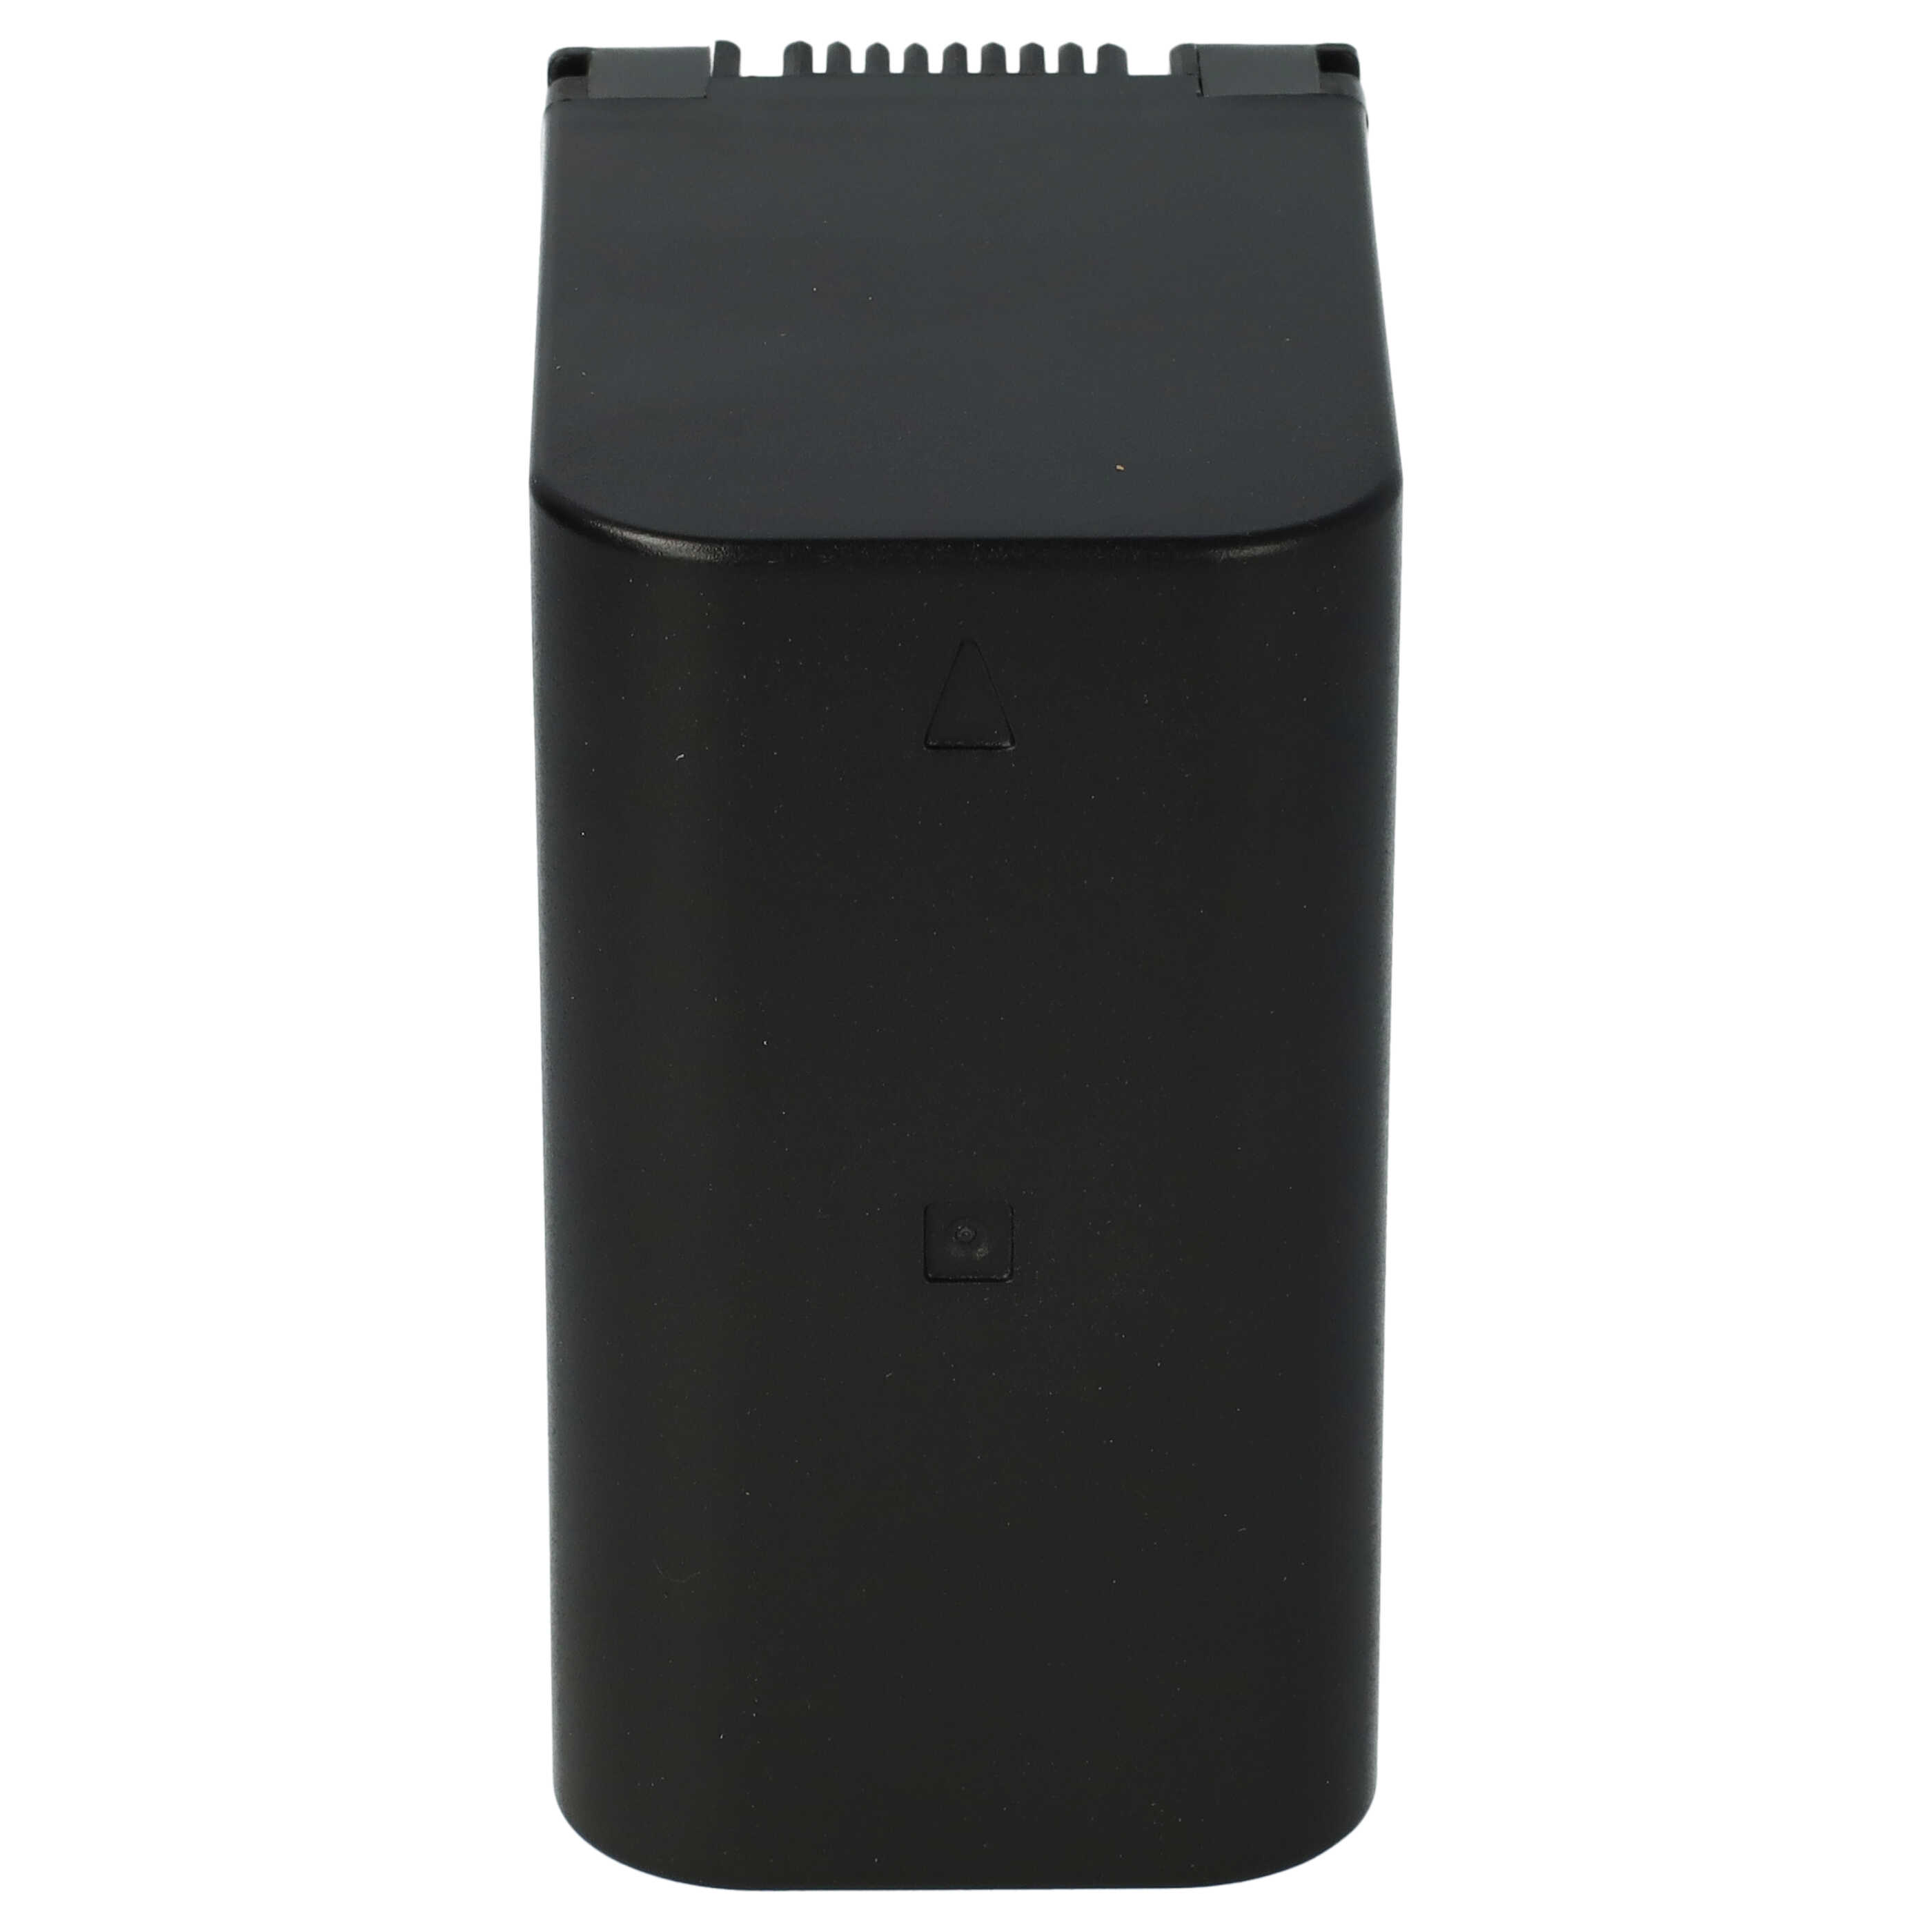 Videocamera Battery Replacement for JVC BN-VC298G, BN-VC296G, BN-VC264G - 10500mAh 7.4V Li-Ion